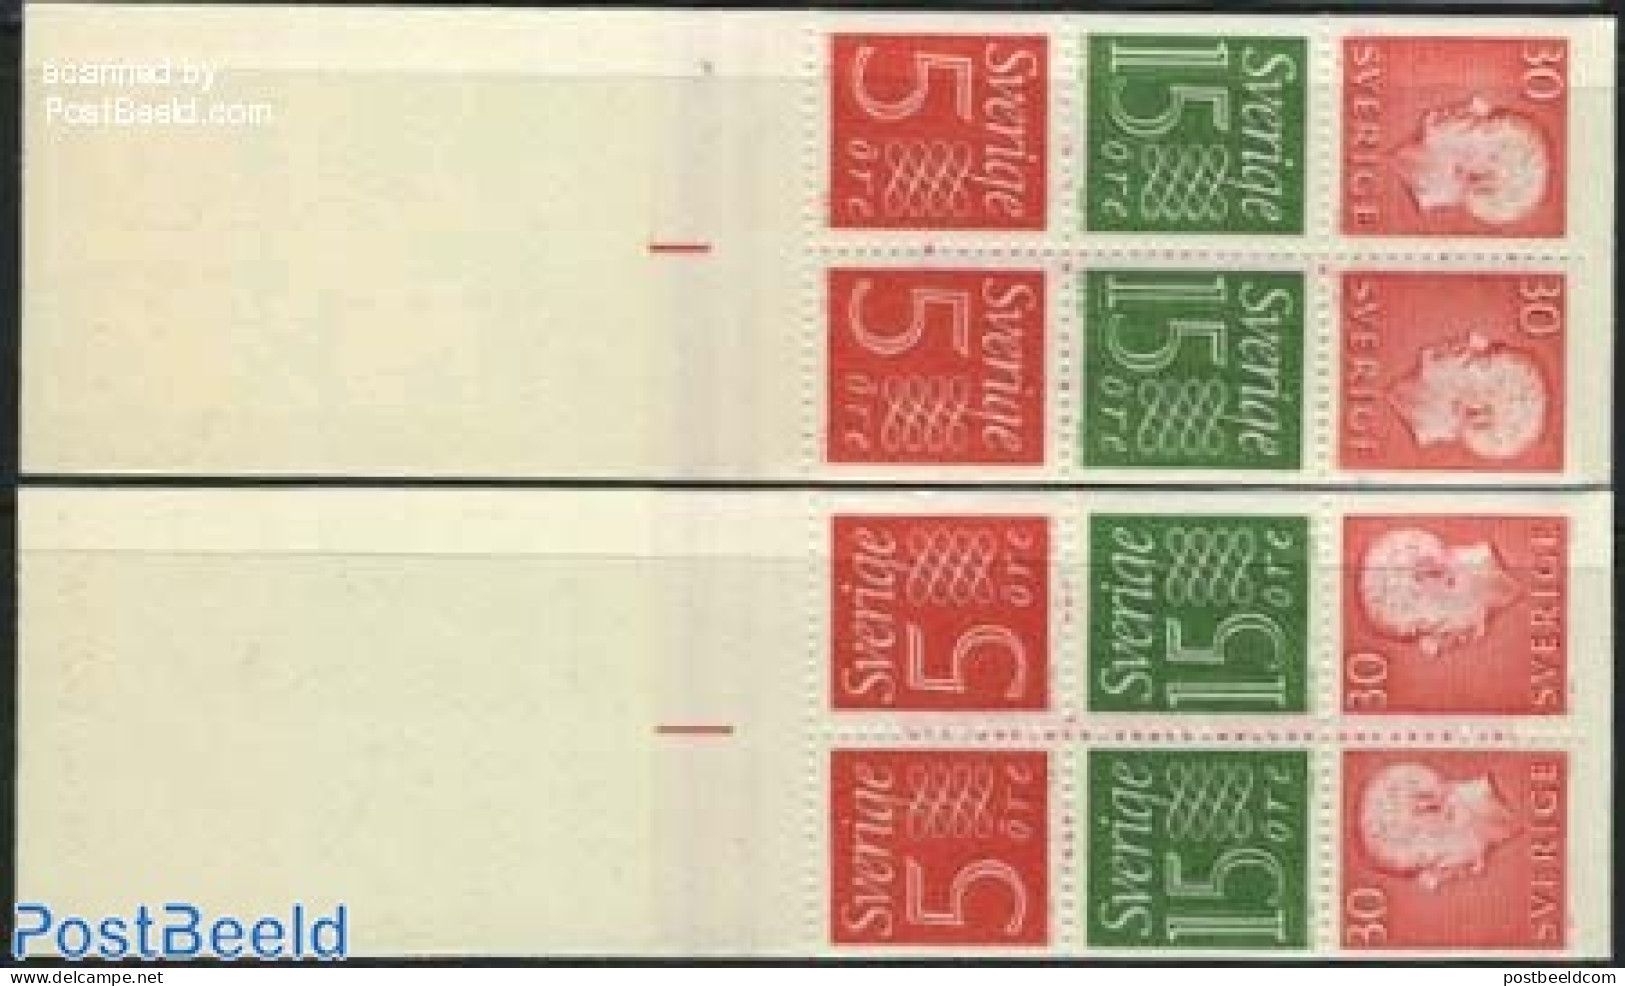 Sweden 1966 Definitives 2 Booklets, Mint NH, Stamp Booklets - Unused Stamps